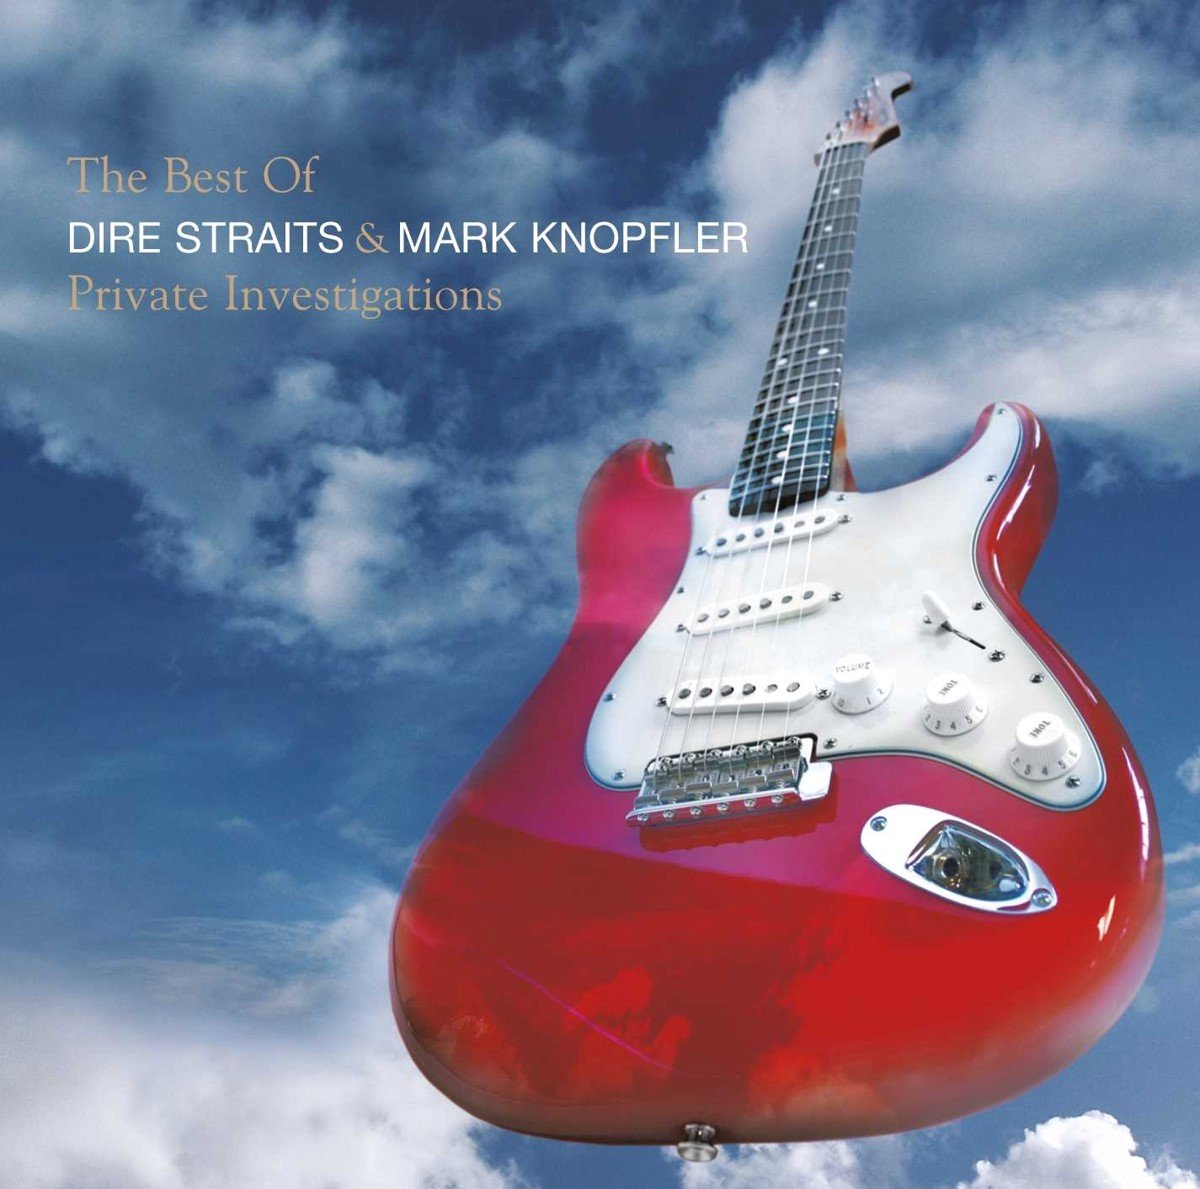 Dire Straits & Mark Knopfler - Private Investigations - The Best Of (2 LP) - Dire Straits & Mark Knopfler